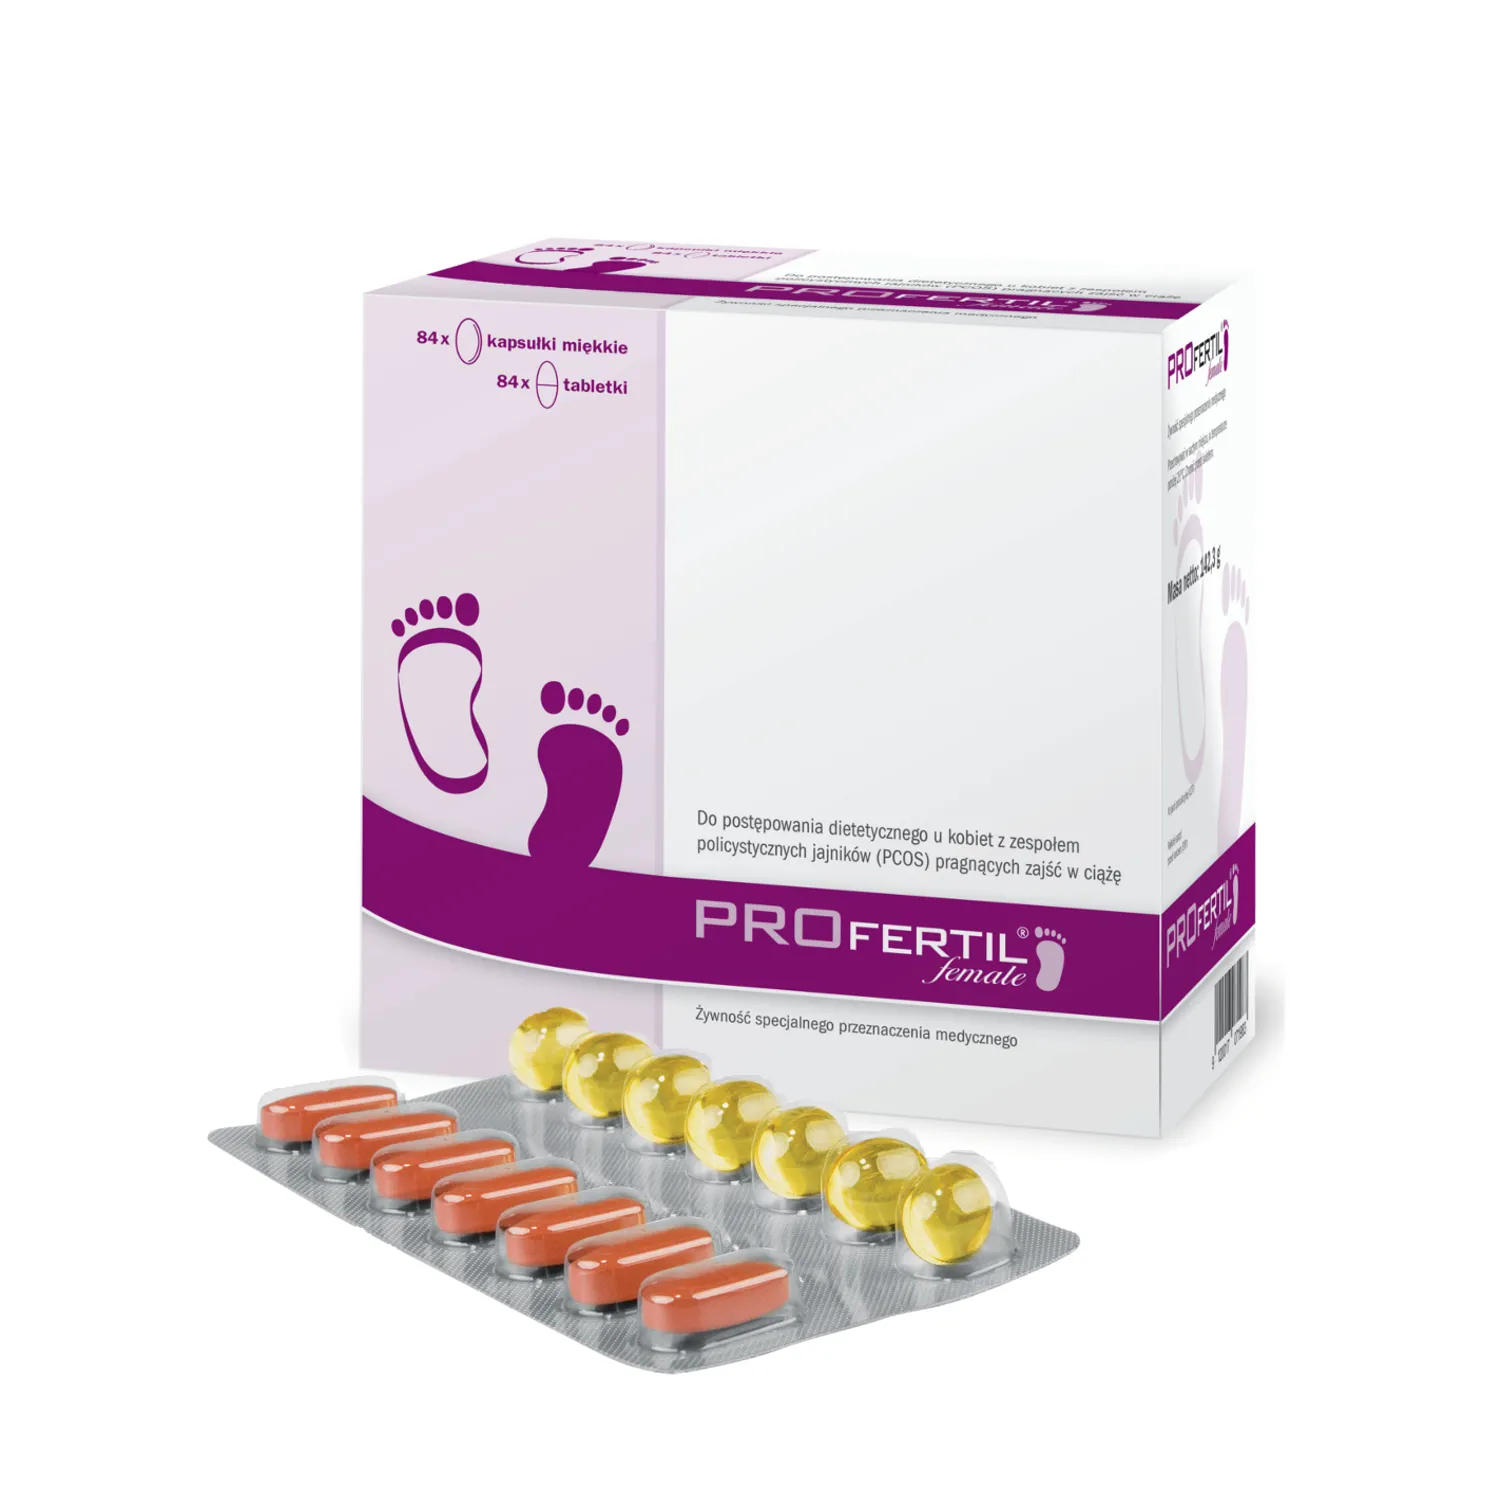 Profertil Female, 84 tabletek + 84 kapsułek